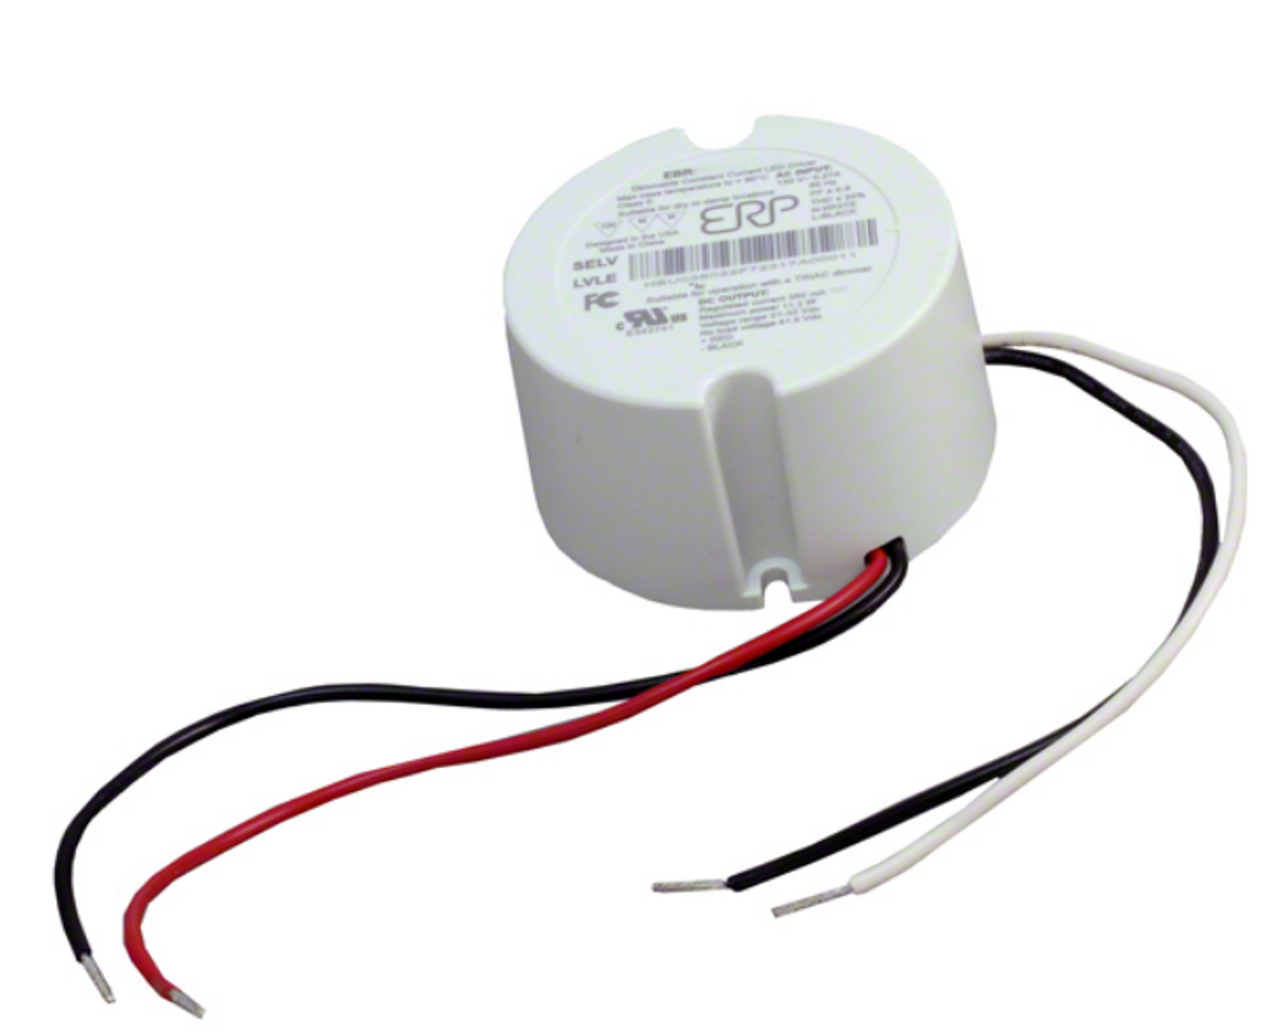 EBR010U-0200-42 ERP Constant Current LED | 8W 200mA